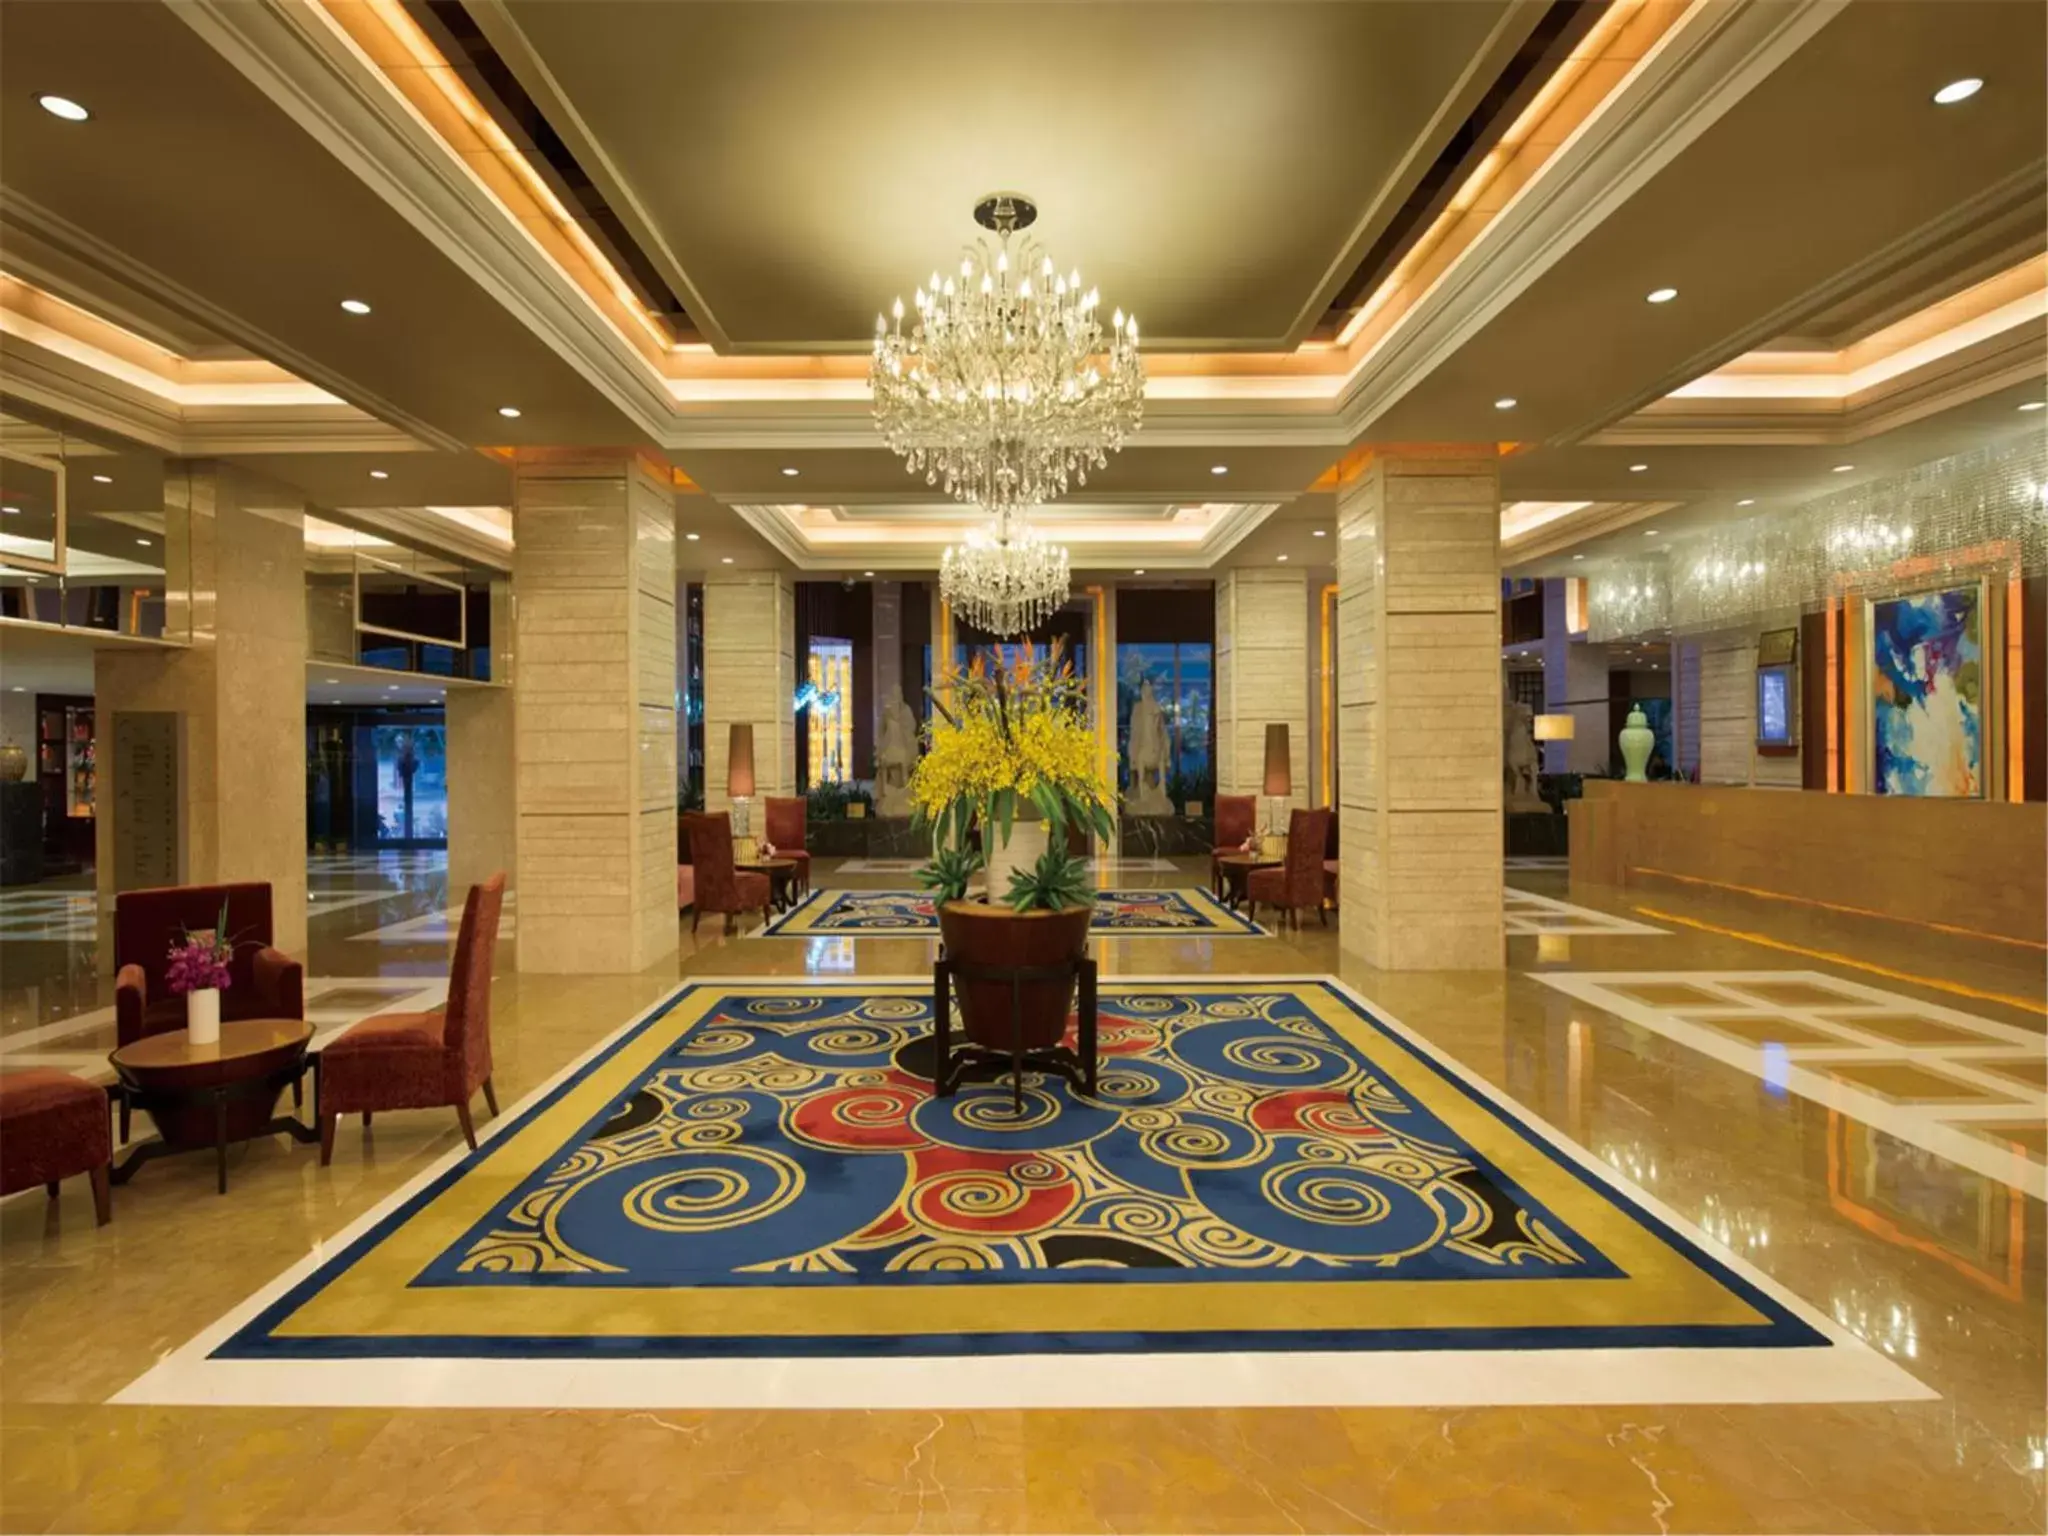 Lobby or reception, Lobby/Reception in Chengdu Tianfu Sunshine Hotel